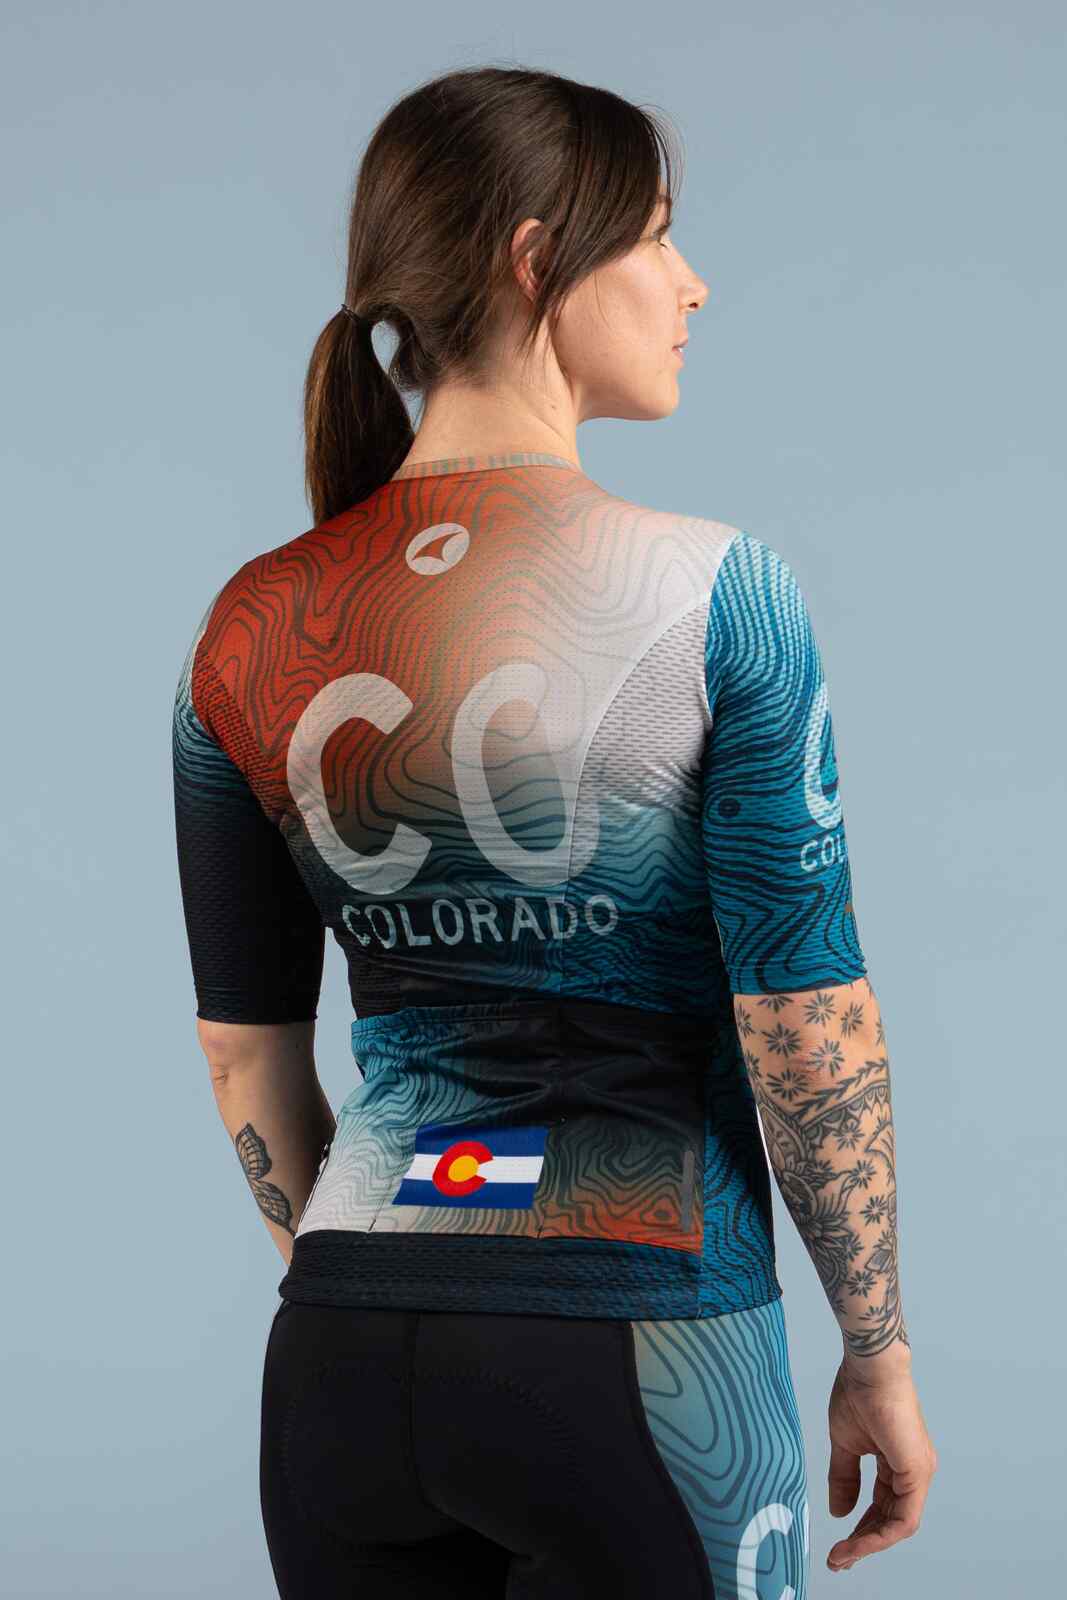 Women's Colorado Geo Mesh Cycling Jersey - Back View